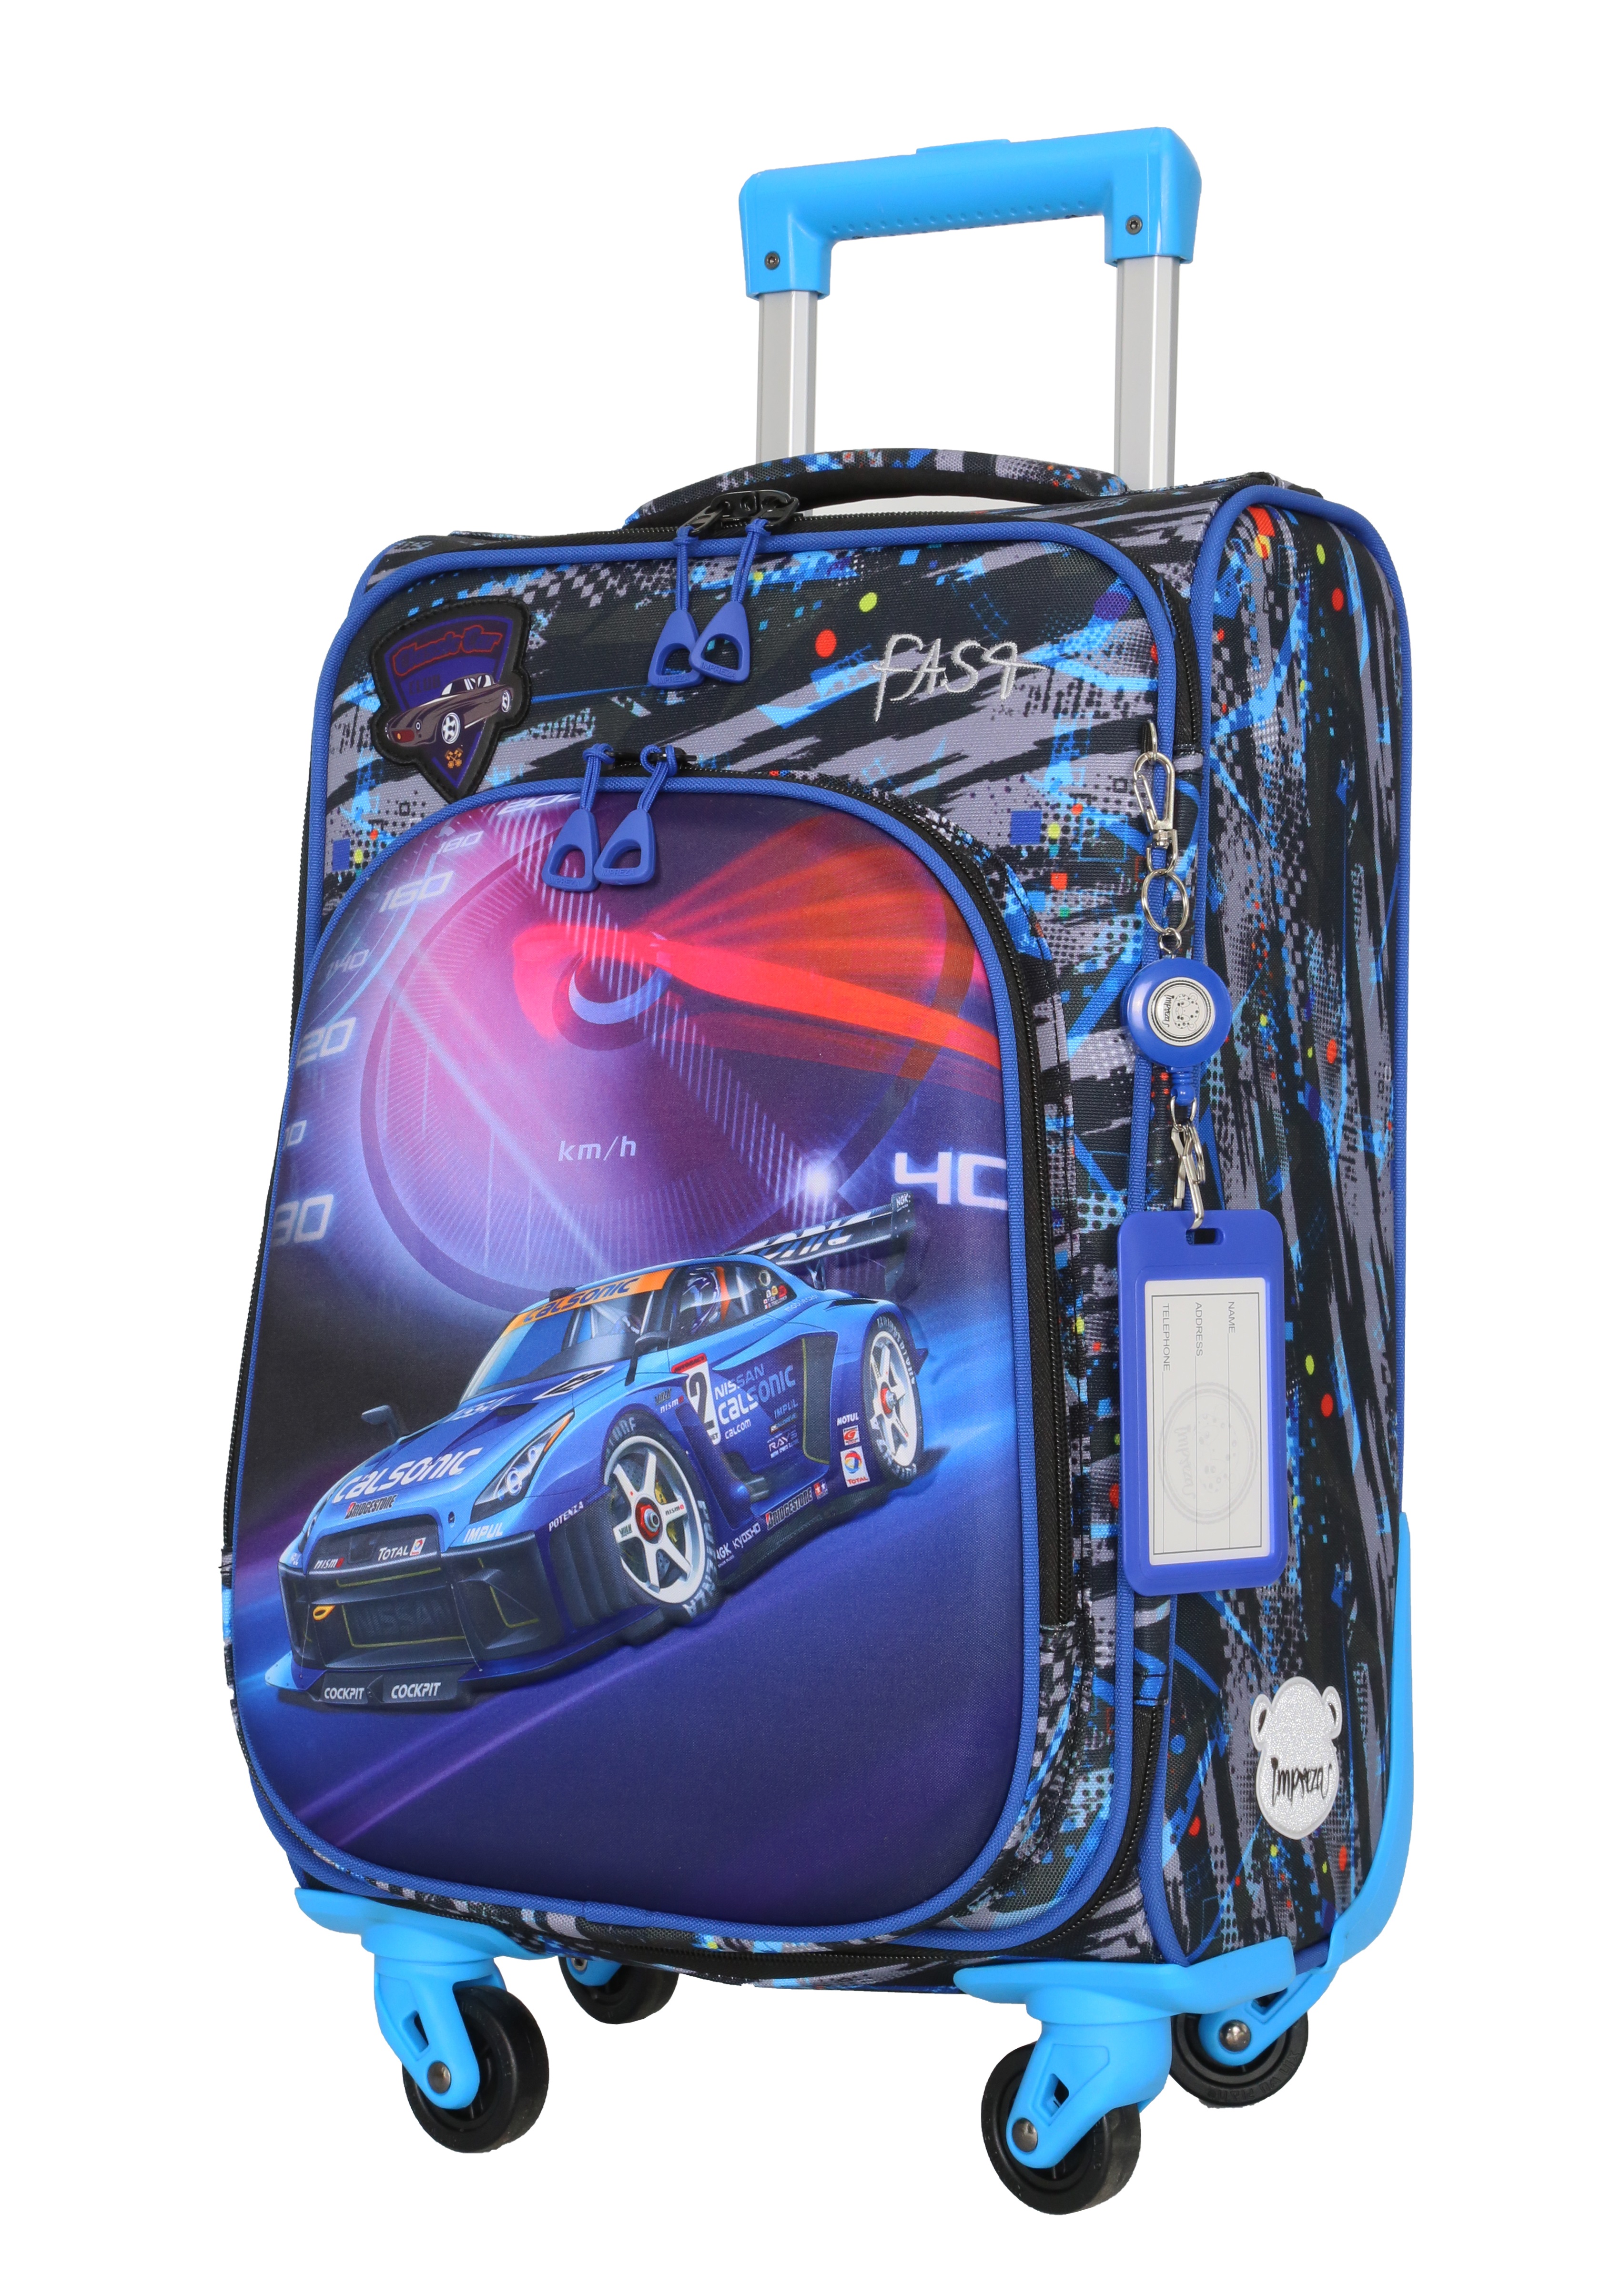 Чемодан детский BAGS-ART DS 50 серия 50 синий,красный чемодан детский bags art ds 50 серия 50 синий красный